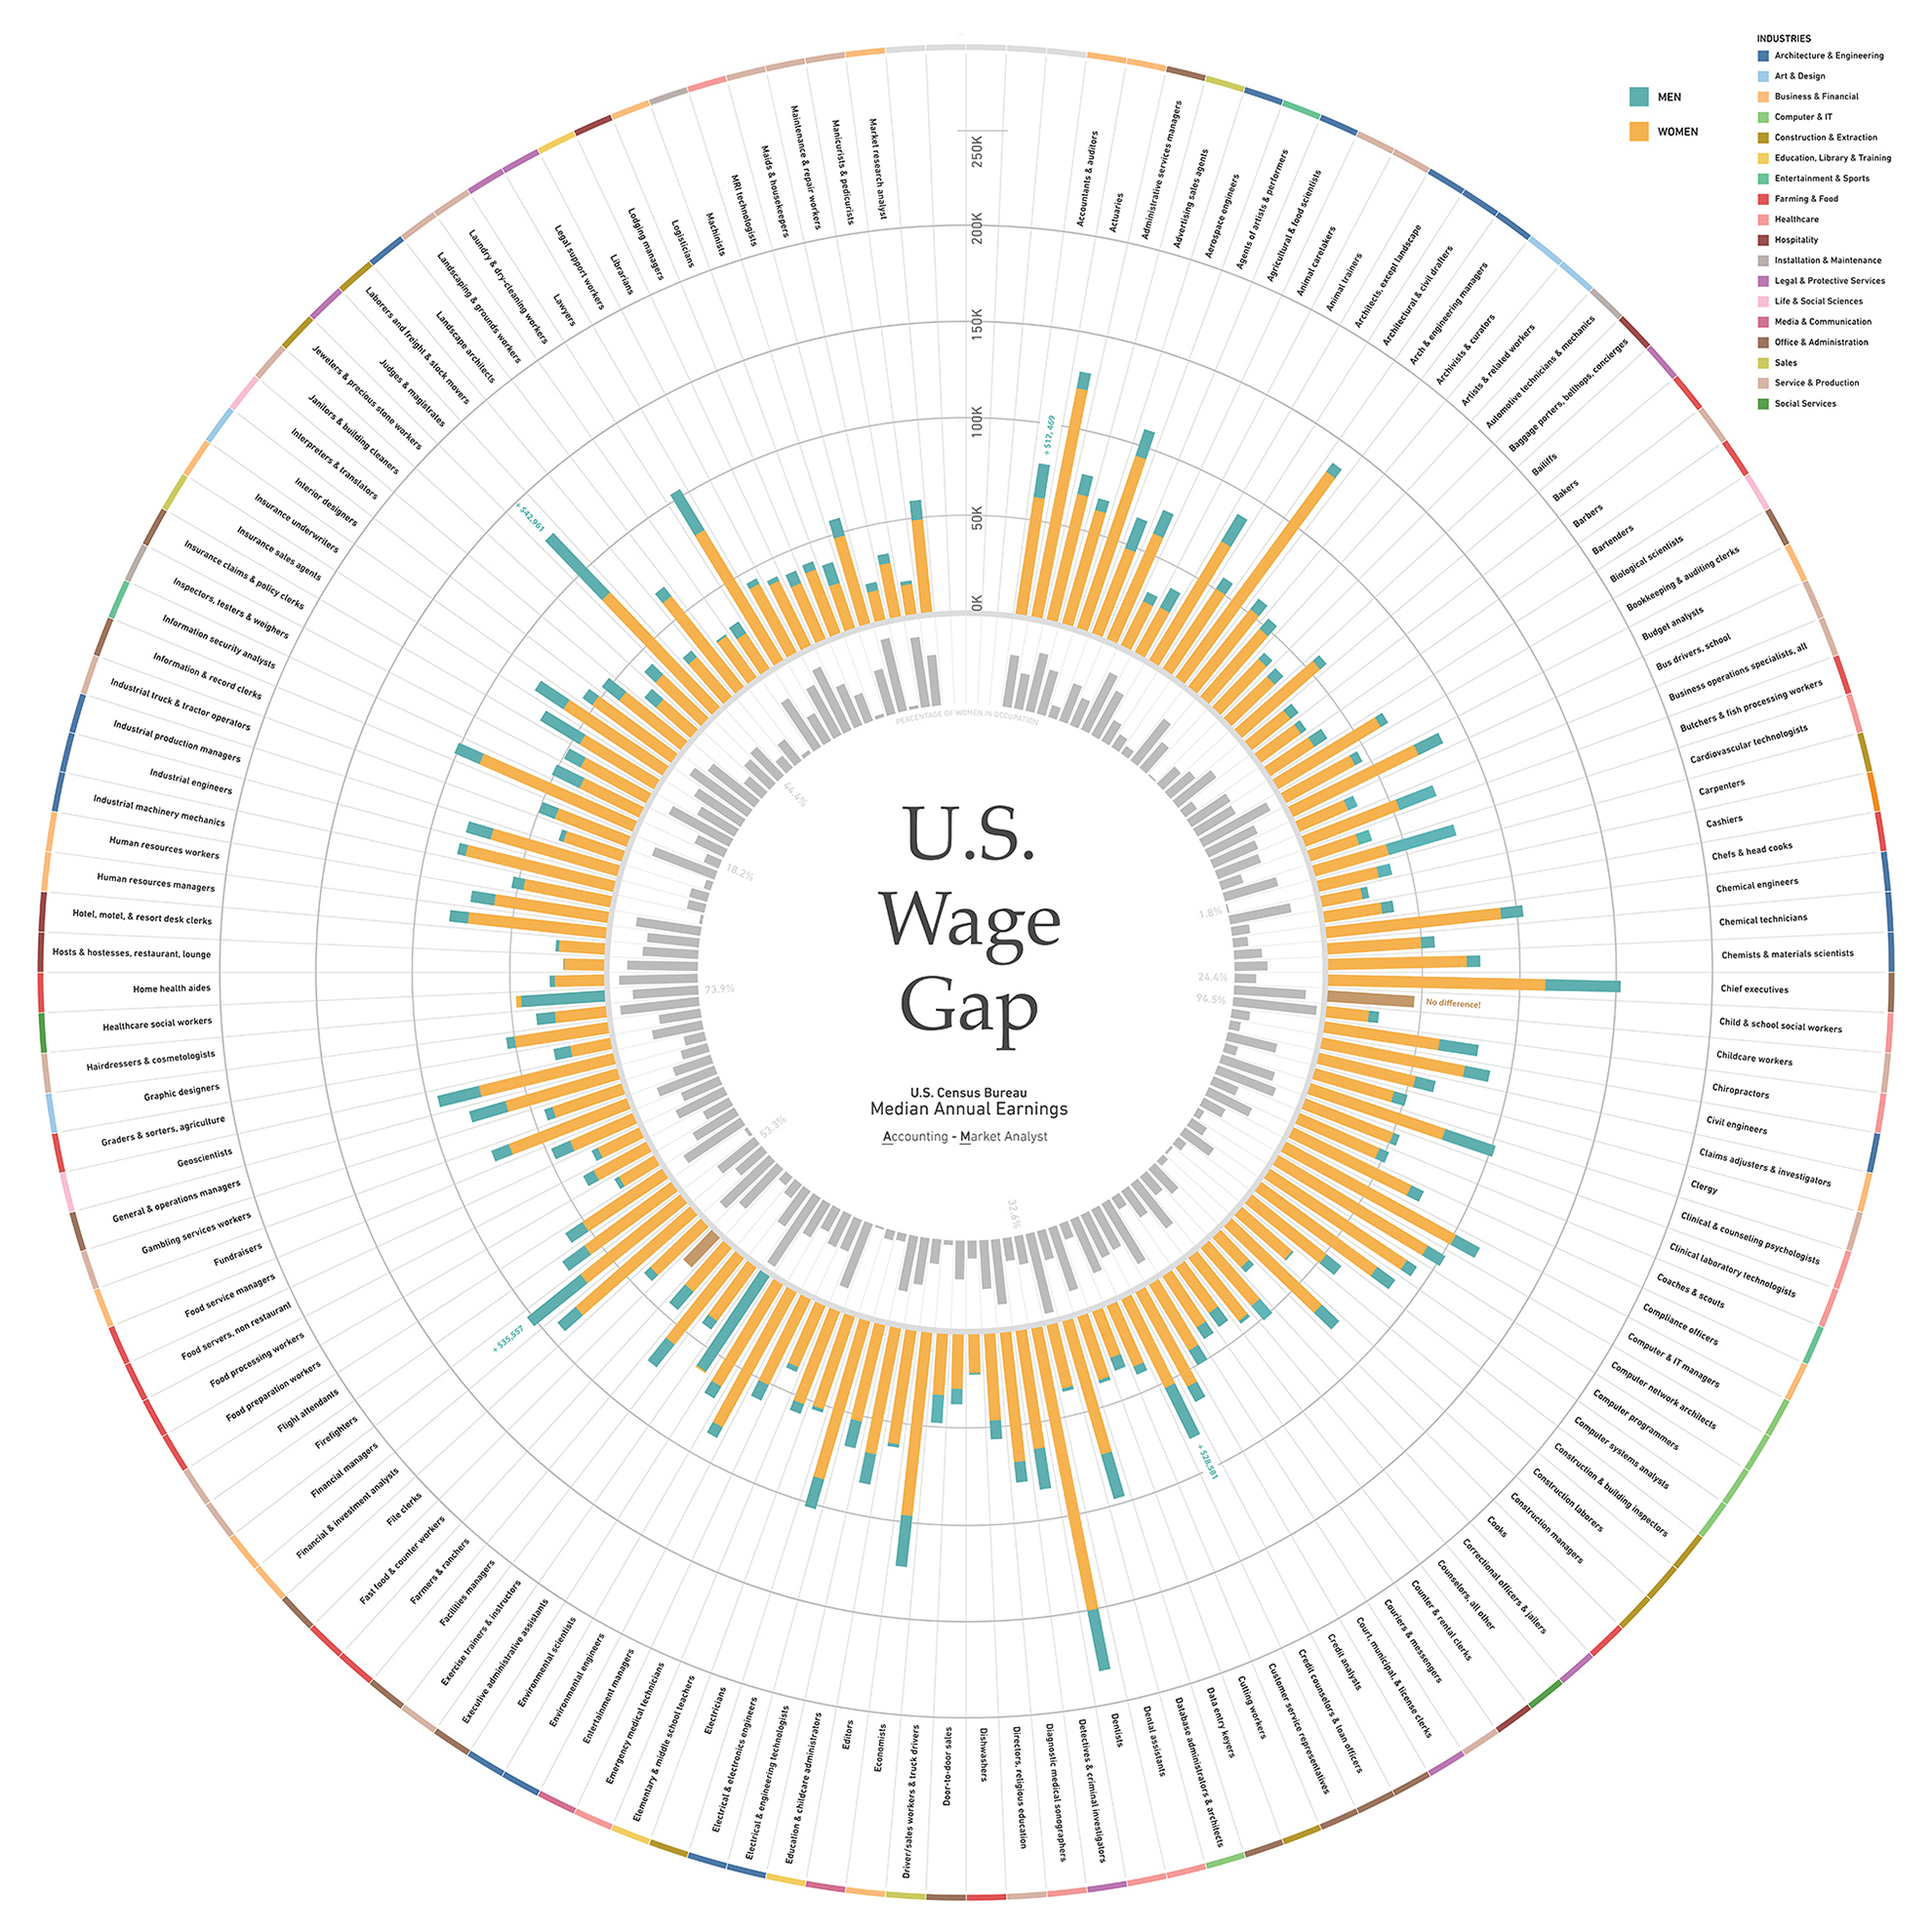 Global Wage Gap